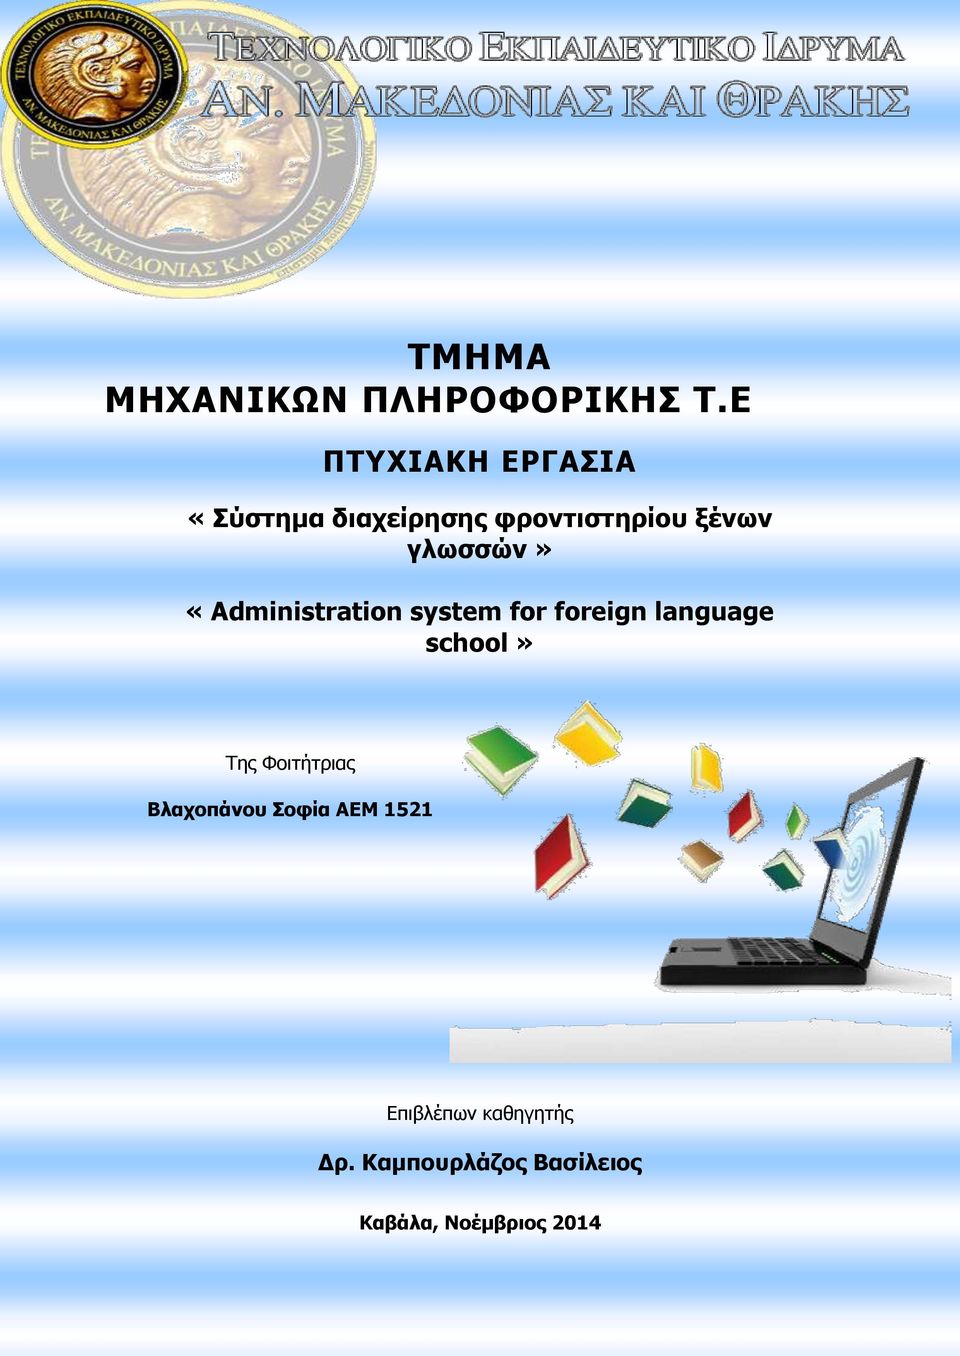 γλωσσών» «Administration system for foreign language school» Της